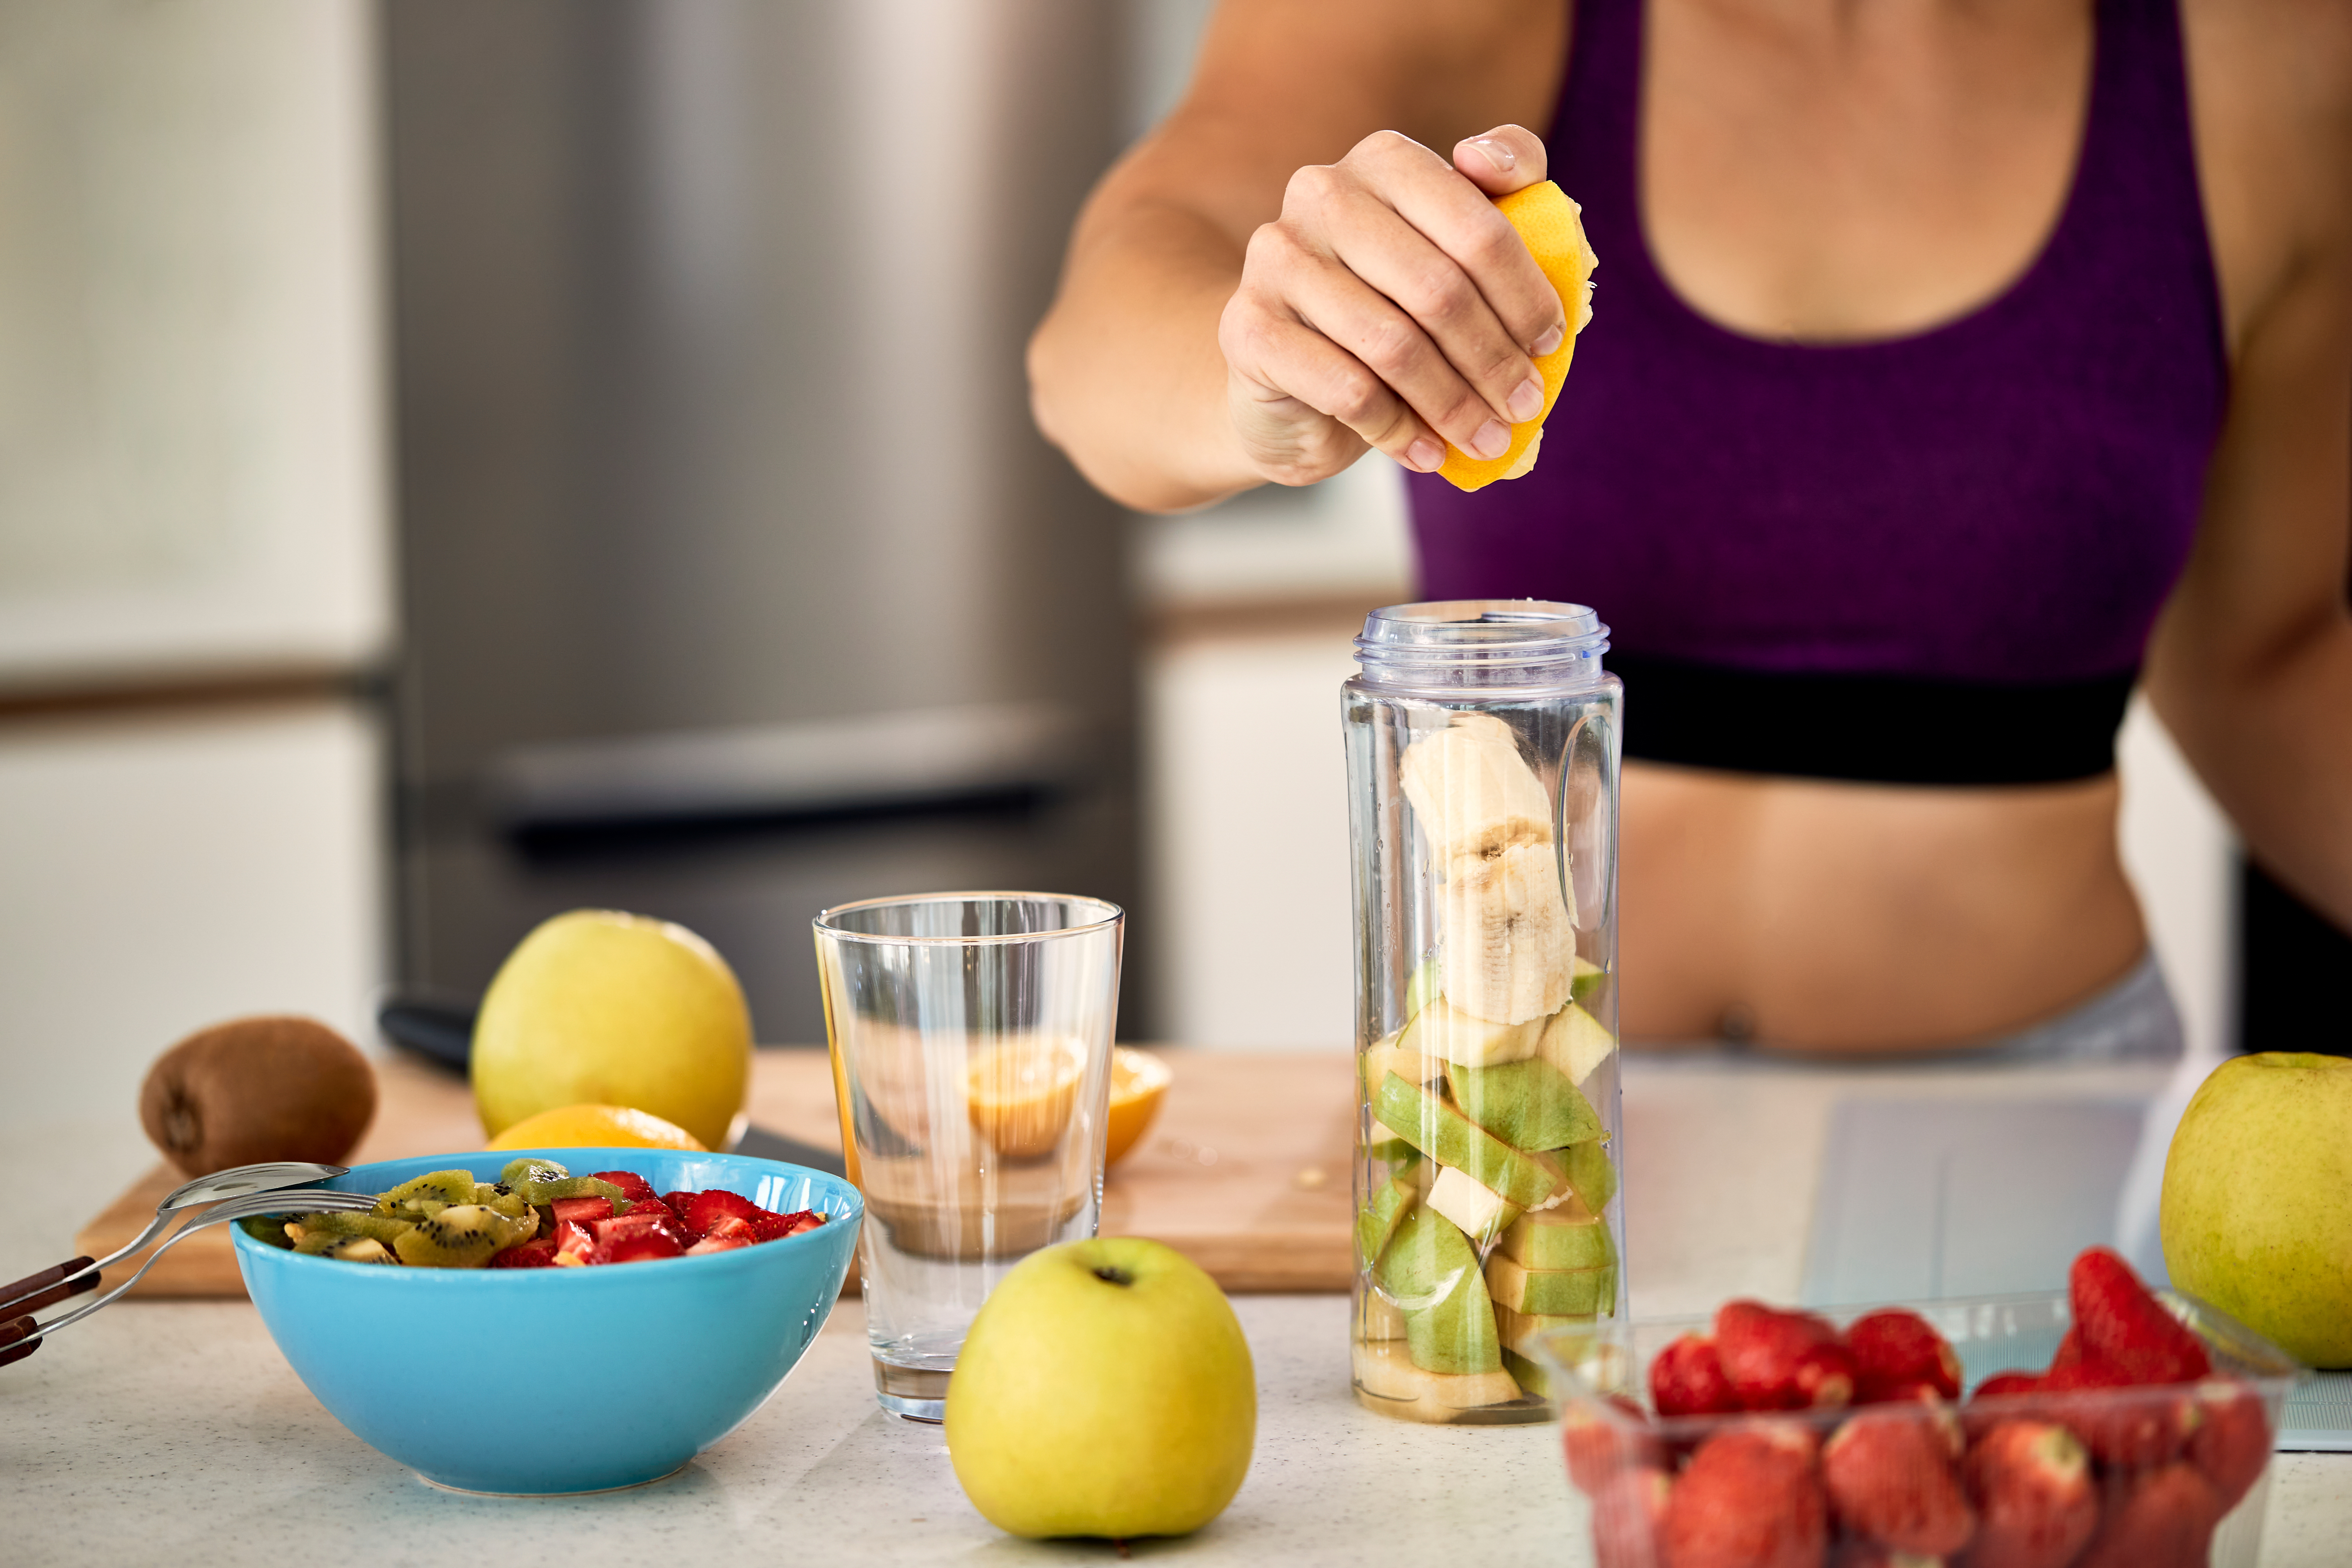 Hidratos de carbono y proteínas: qué comidas se recomiendan para antes y después de hacer ejercicio